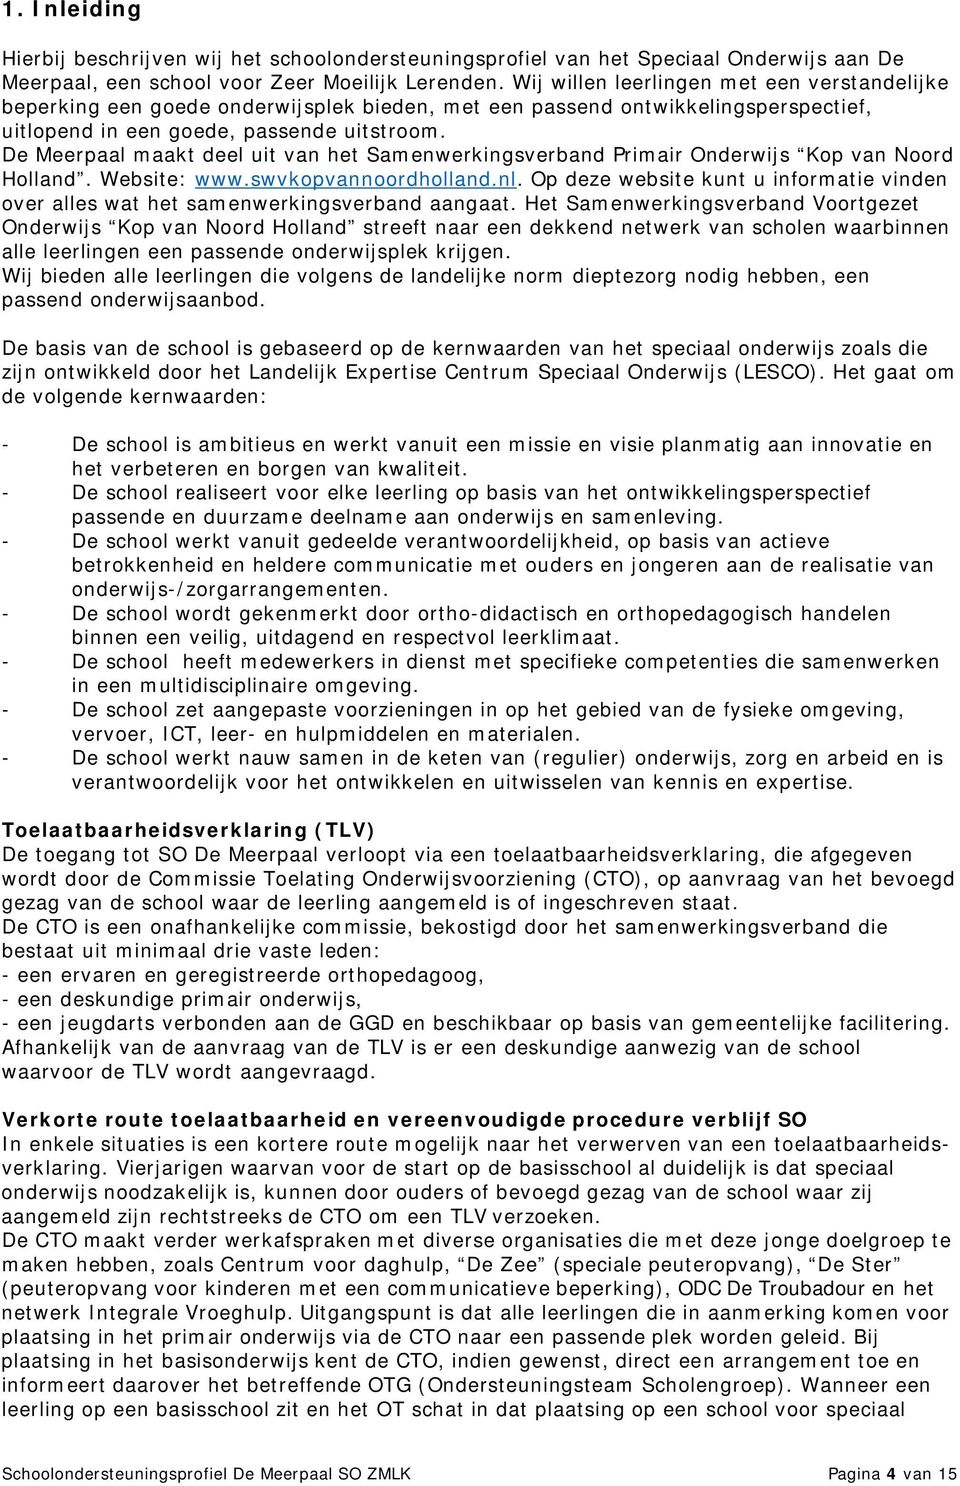 De Meerpaal maakt deel uit van het Samenwerkingsverband Primair Onderwijs Kop van Noord Holland. Website: www.swvkopvannoordholland.nl.